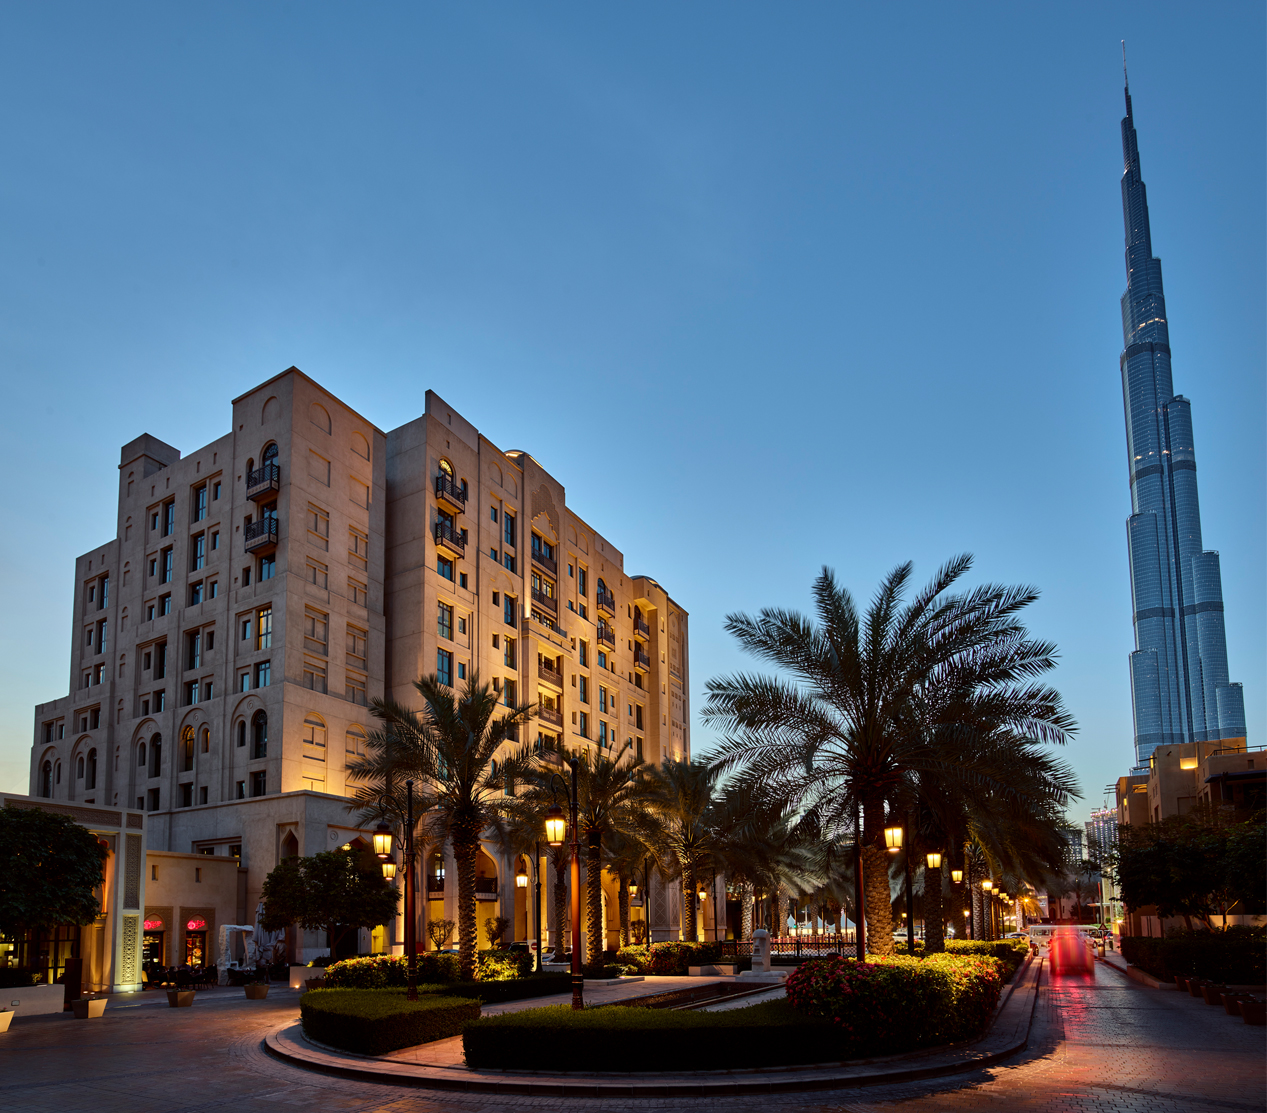 تجربة خيالية ممزوجة بالجمال الراقي والثقافة العربية في بوتيك المنزل وسط مدينة دبي